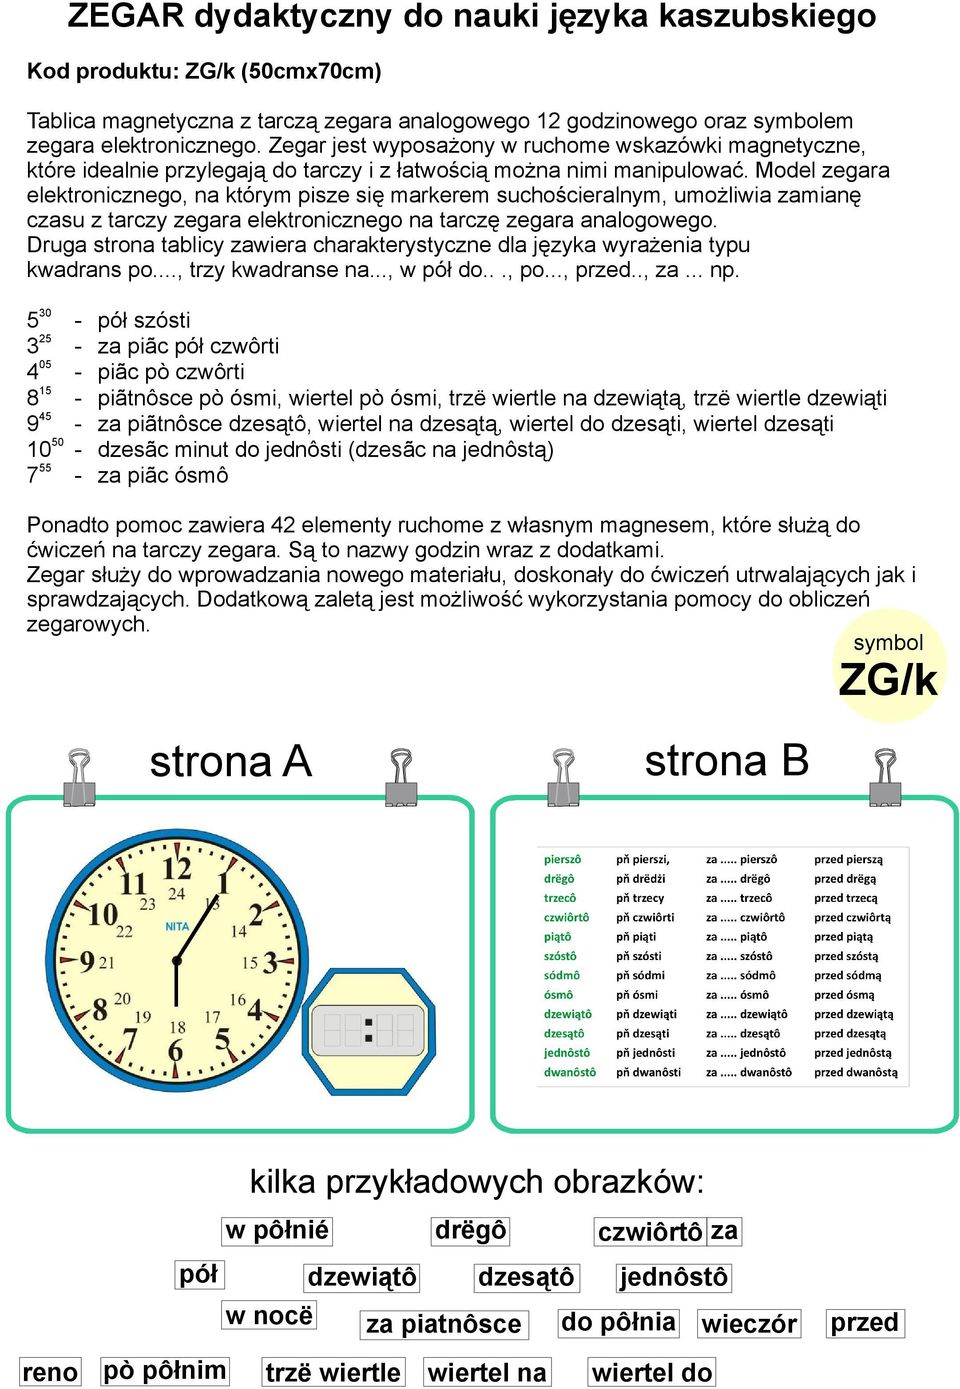 Model zegara elektronicznego, na którym pisze się markerem suchościeralnym, umożliwia zamianę czasu z tarczy zegara elektronicznego na tarczę zegara analogowego.